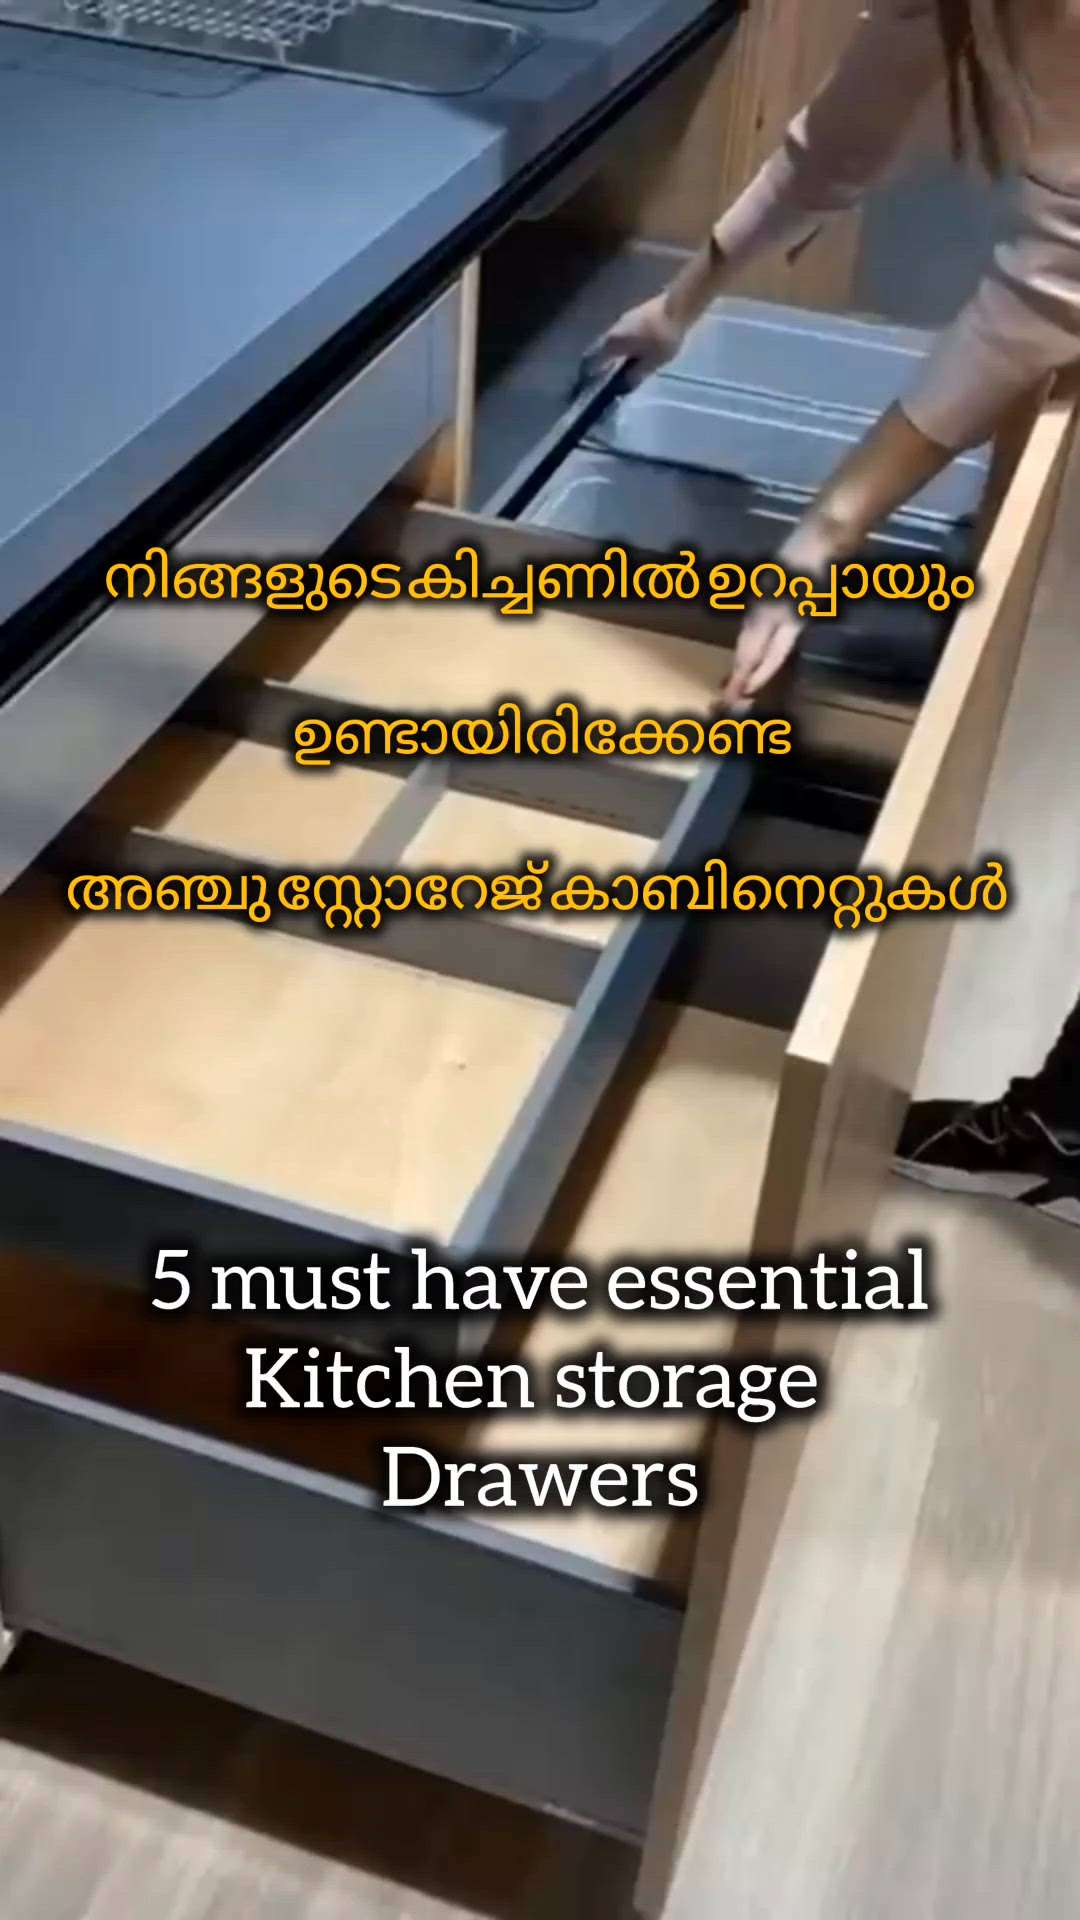 നിങ്ങളുടെ കിച്ചണിൽ ഉറപ്പായും ഉണ്ടായിരിക്കേണ്ട അഞ്ചു സ്റ്റോറേജ് കാബിനെറ്റുകൾ

Five must have essential storage drawers for your kitchen 

#creatorsofkolo #musthave #home #kitchenideas #modernhomes #ideas #essentials